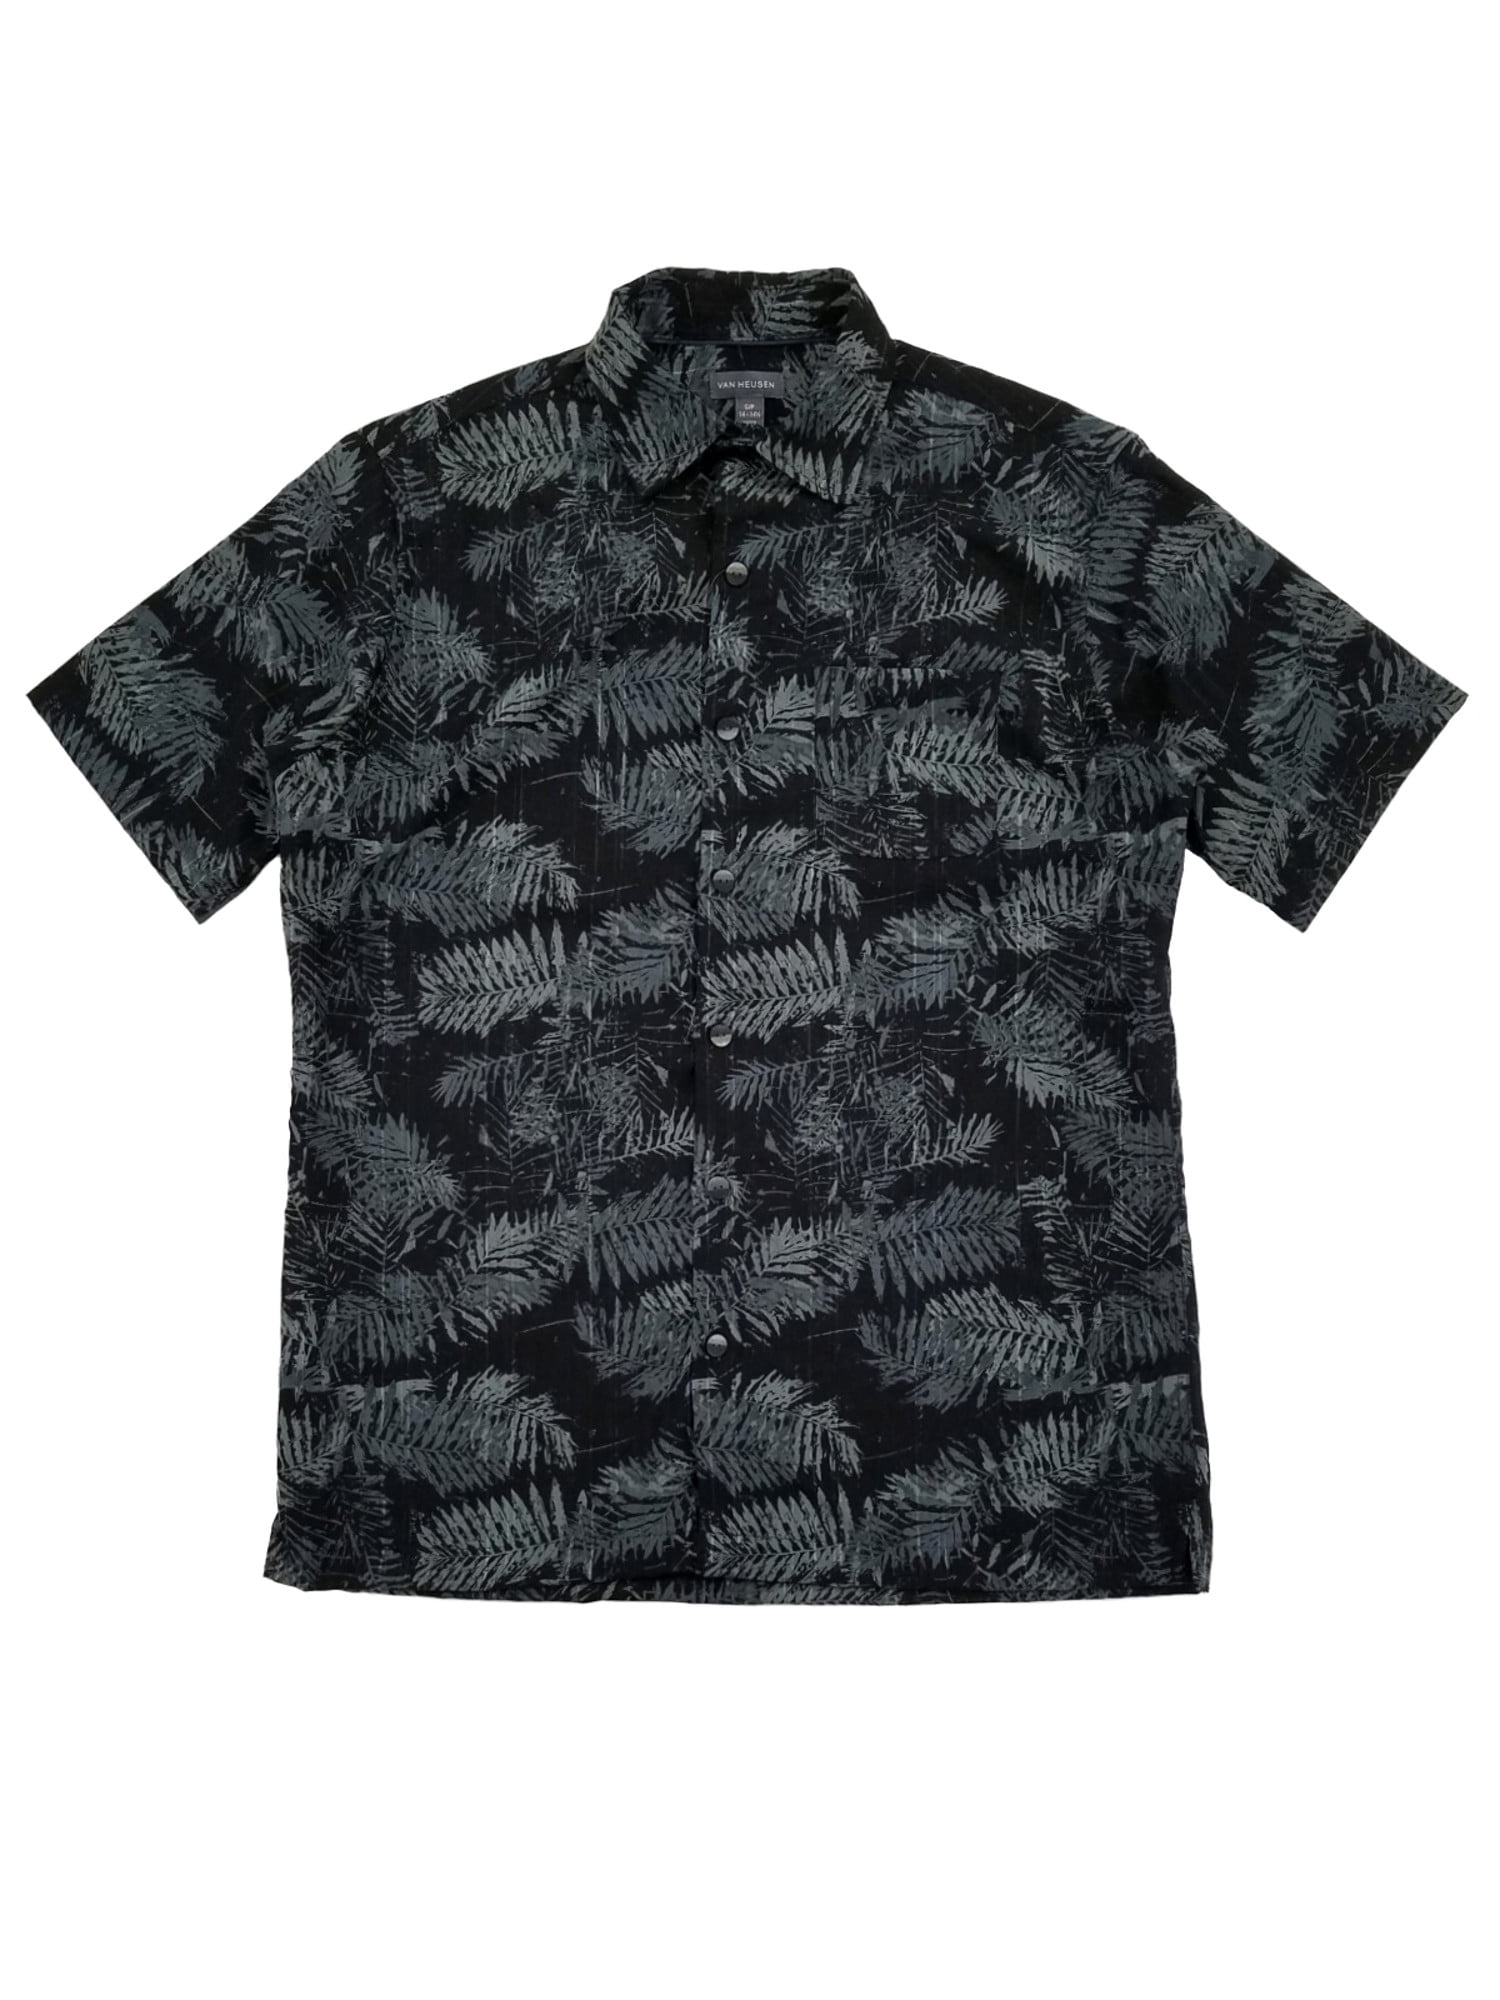 van heusen hawaiian shirts